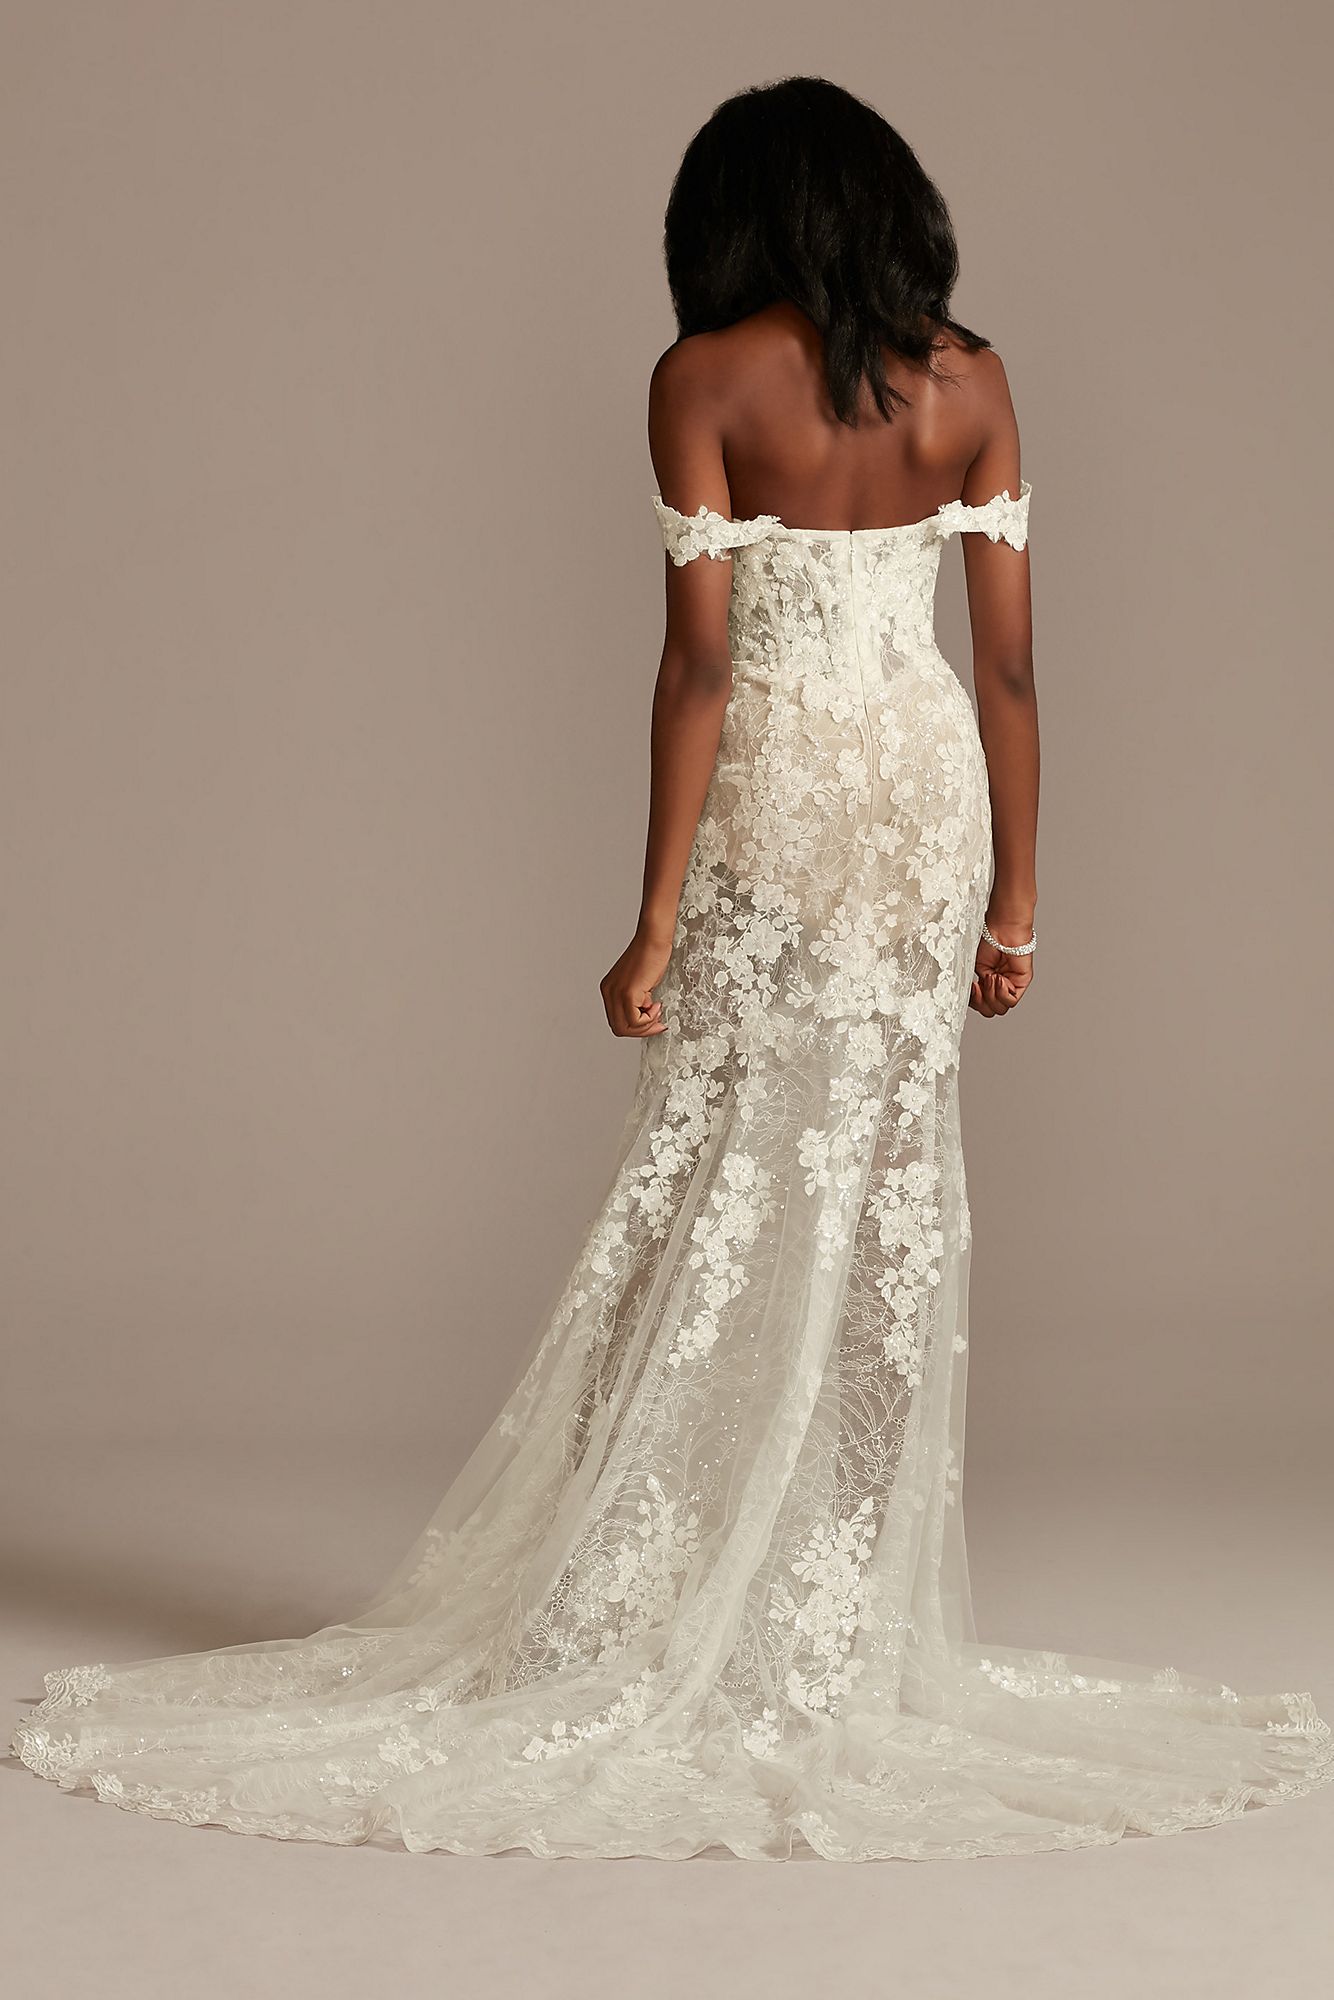 Embellished Illusion Lace Bodysuit Wedding Dress Galina Signature MBSWG899